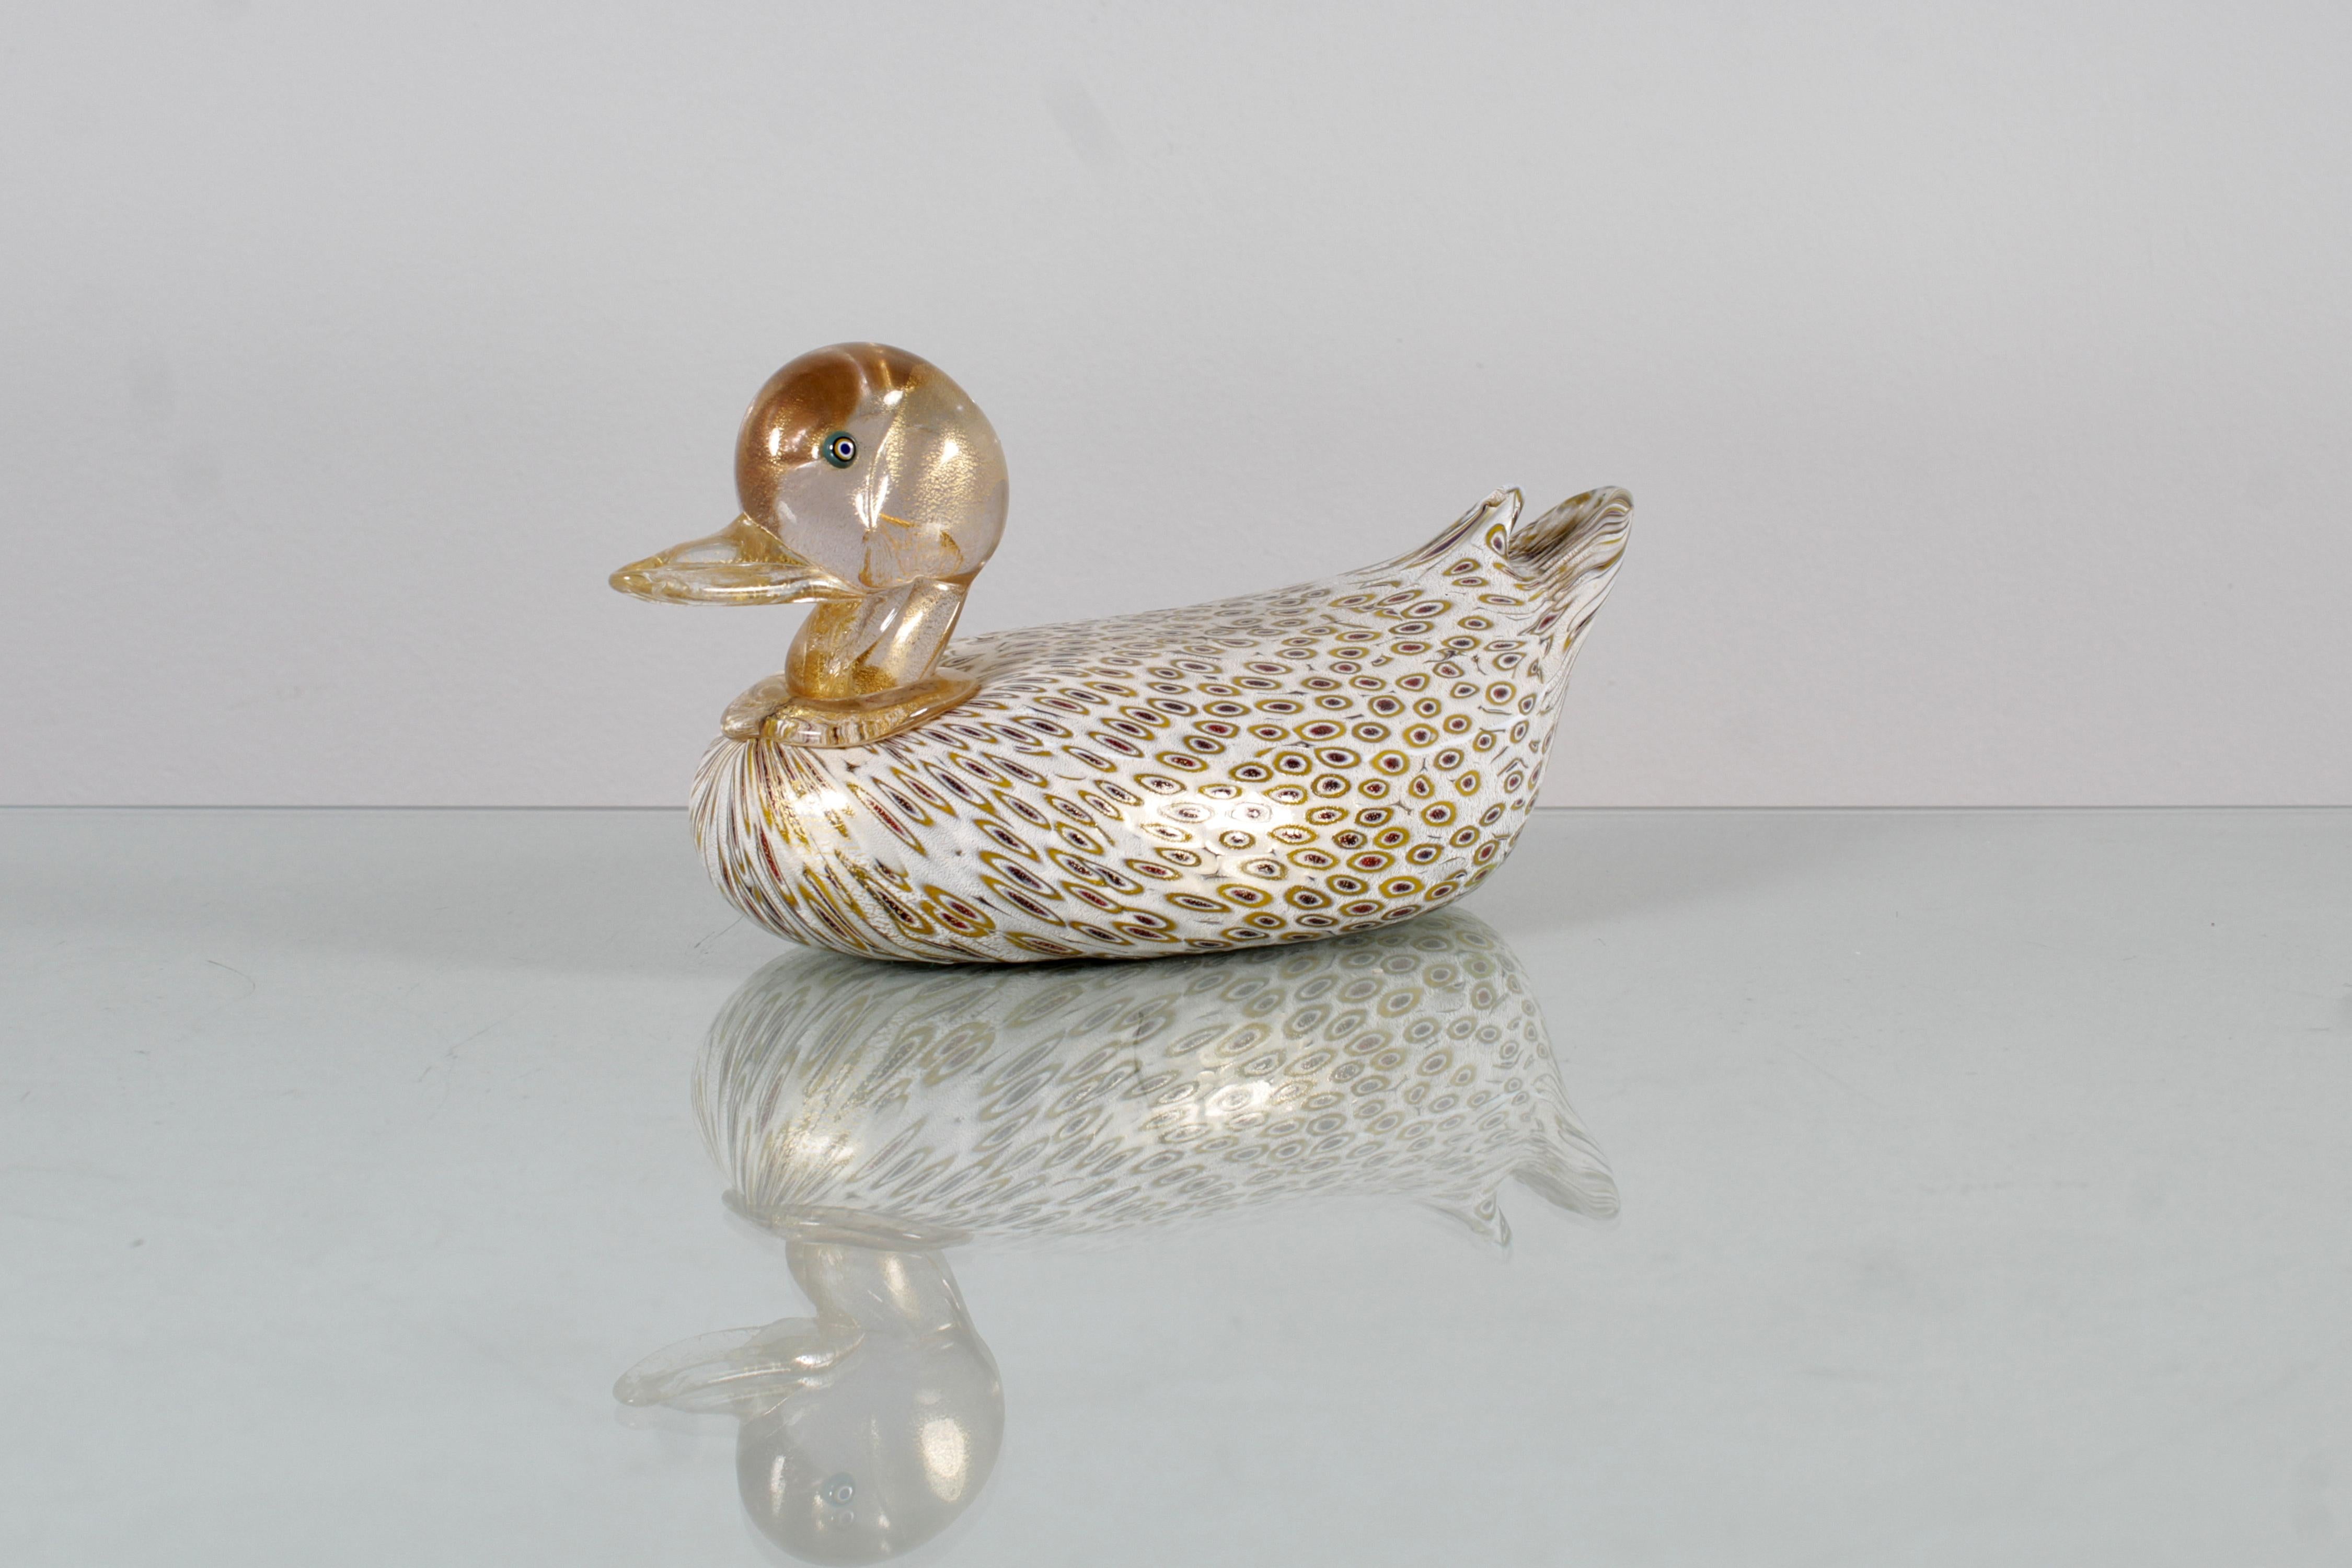 Murano-Glasskulptur, Alfredo Barbini zugeschrieben, die eine Ente darstellt, deren Körper aus Milchglas mit rotem und ockerfarbenem Murrine verziert ist, Kopf und Hals aus transparentem Glas mit Goldeinschlüssen, türkisfarbene Augen. Venezianische